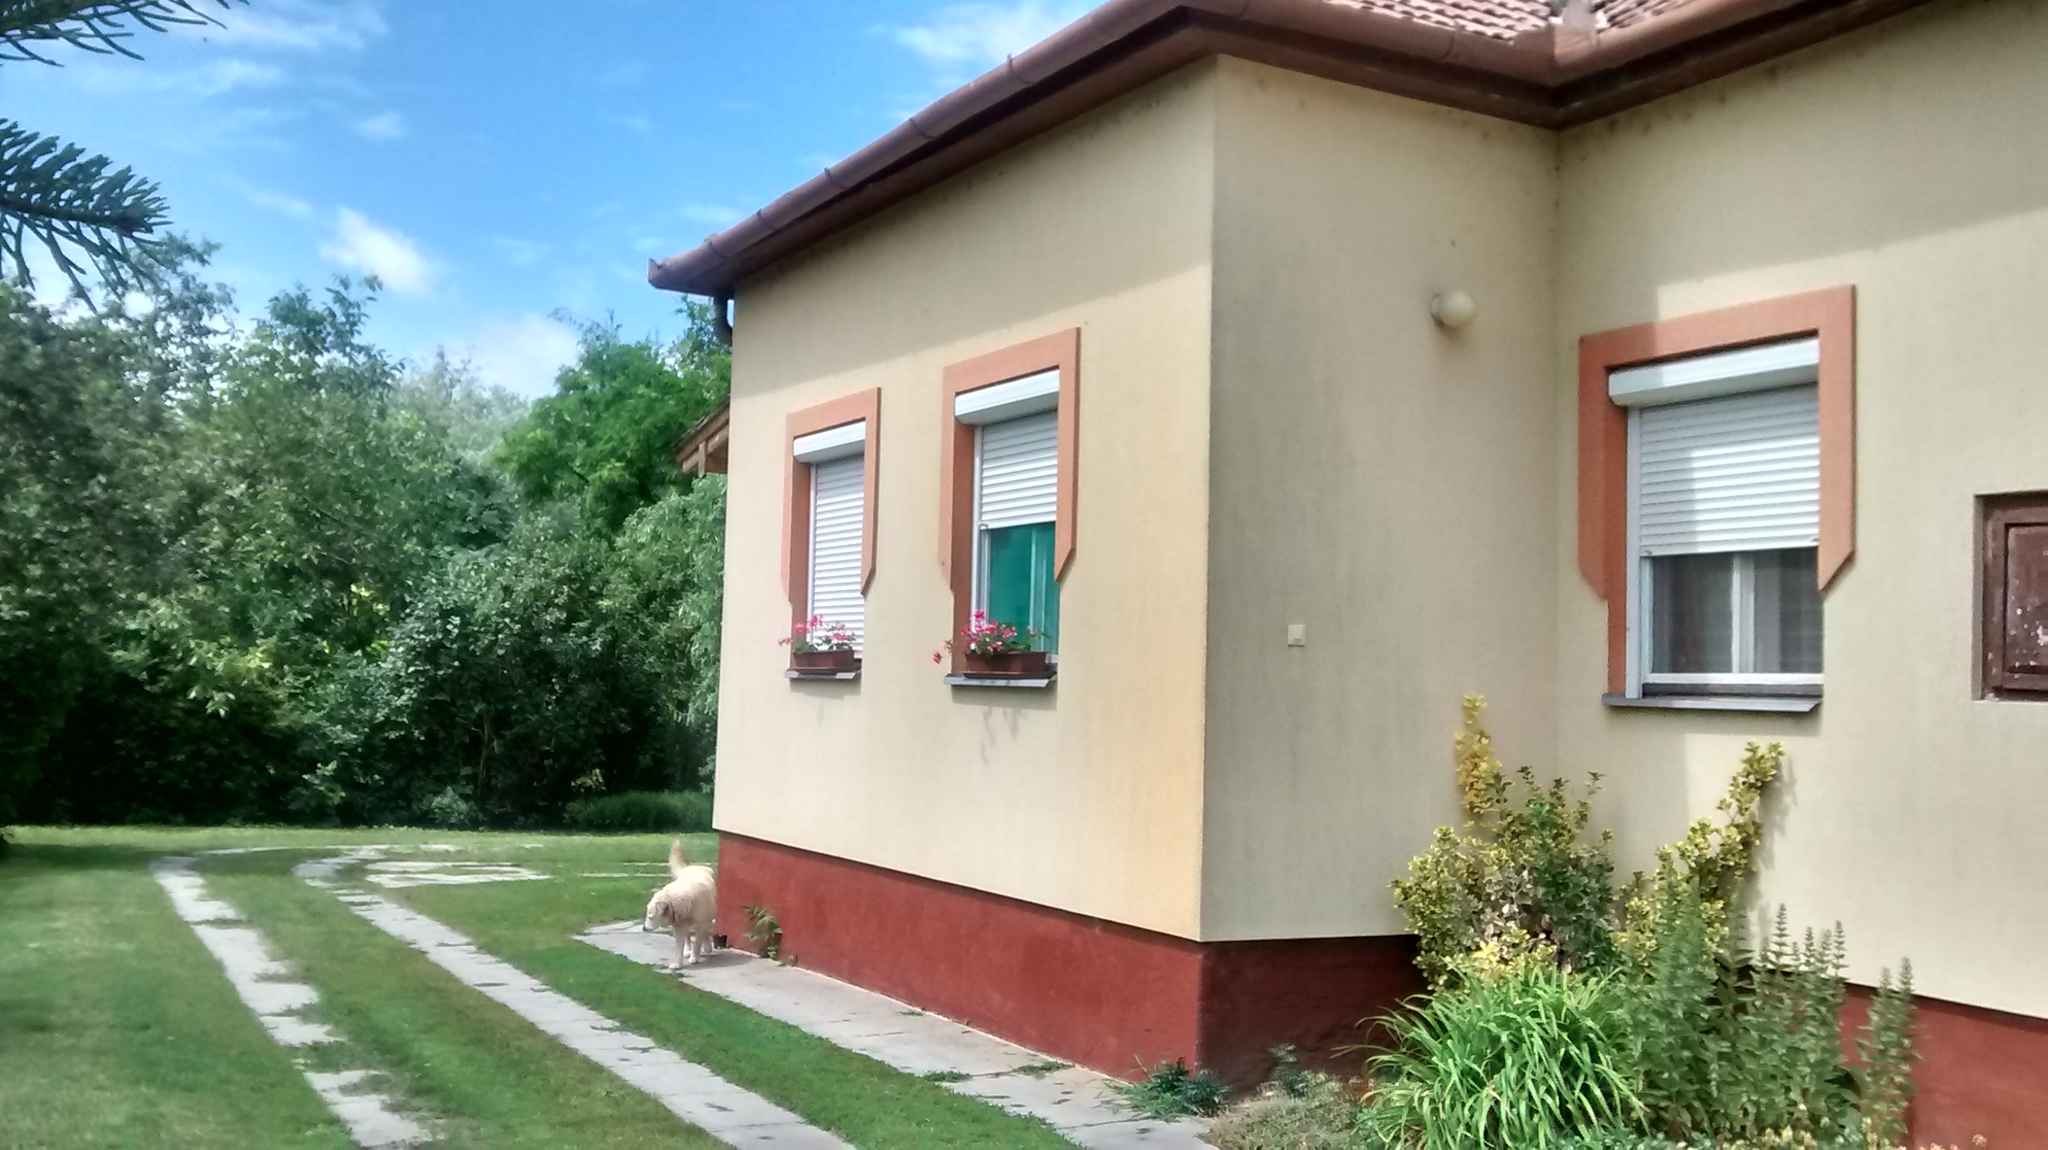 Ferienhaus mit gemütlichem Garten und Gartenp Ferienhaus in Ungarn